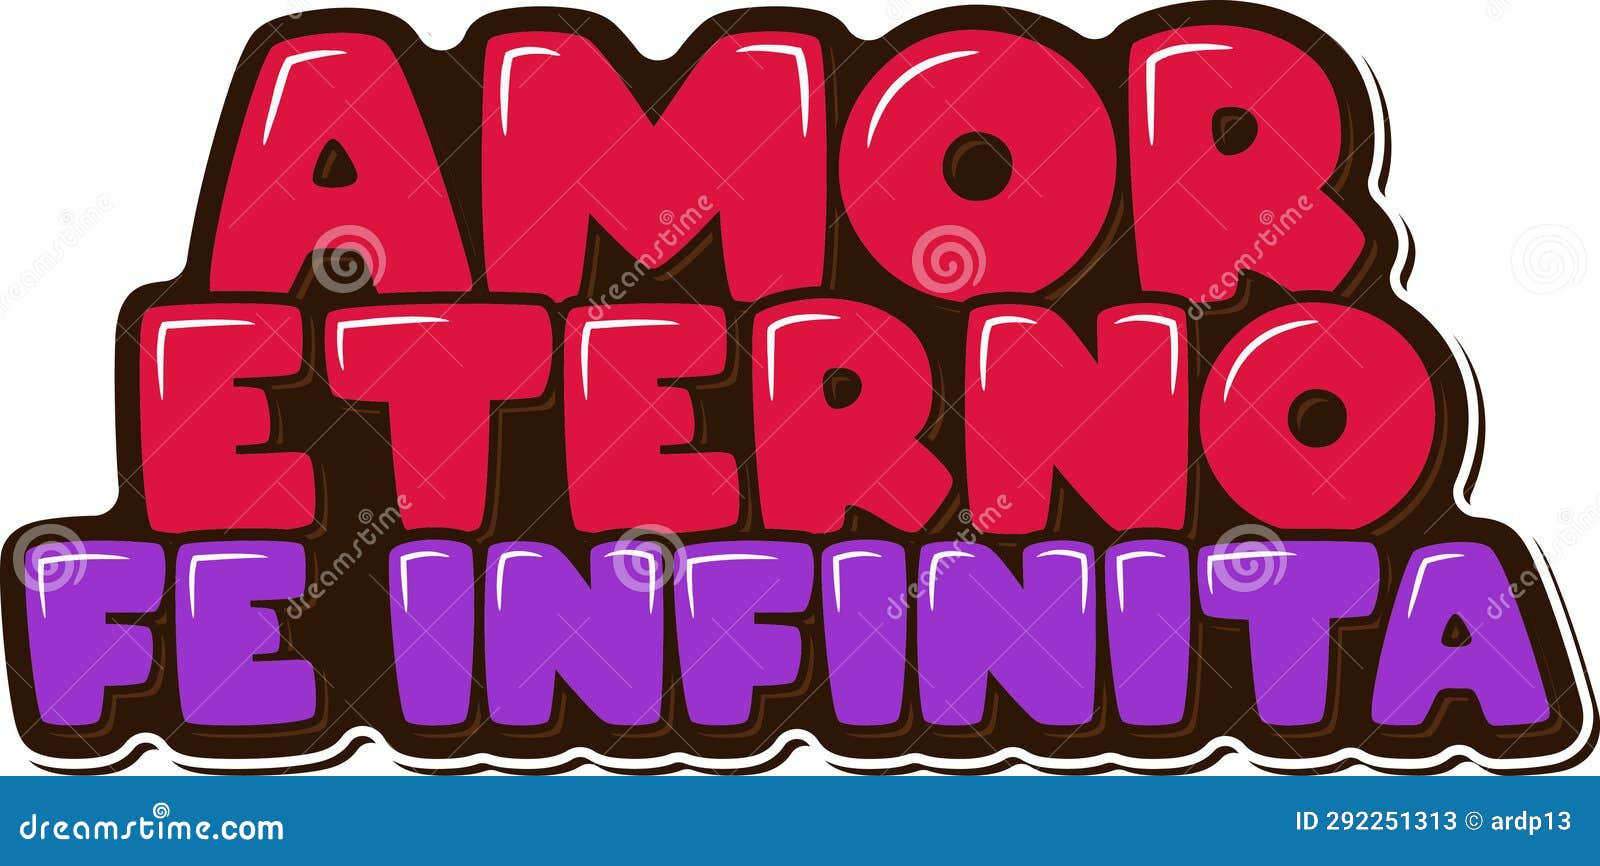 amor eterno fe infinita - eternal love infinite faith lettering